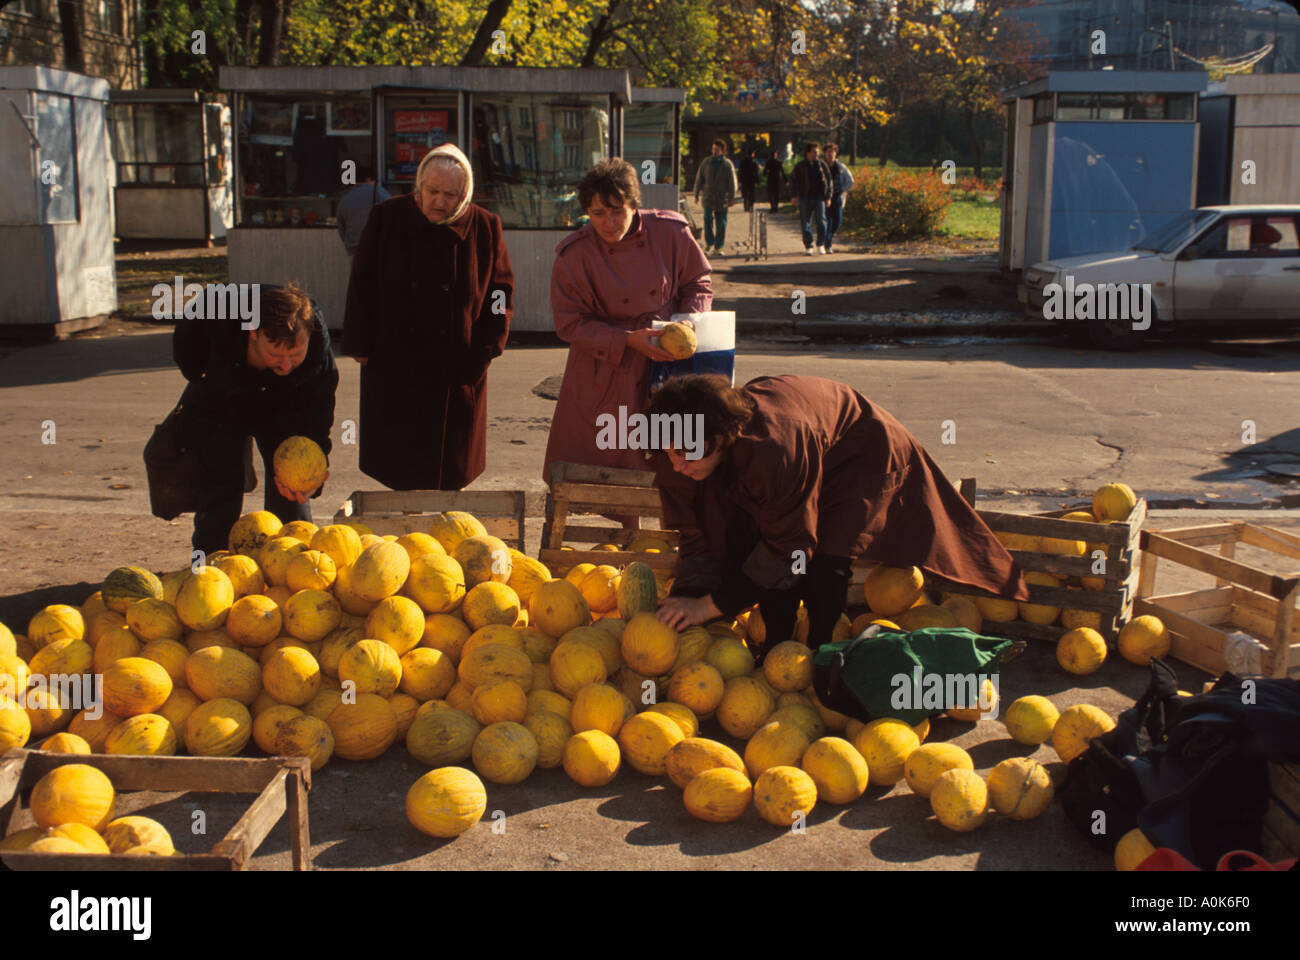 Saint Peterburg Russia,Europa dell'Est europeo,Federazione Russa,produce,frutta,verdura,cibo,venditori bancarelle stand mercato Foto Stock